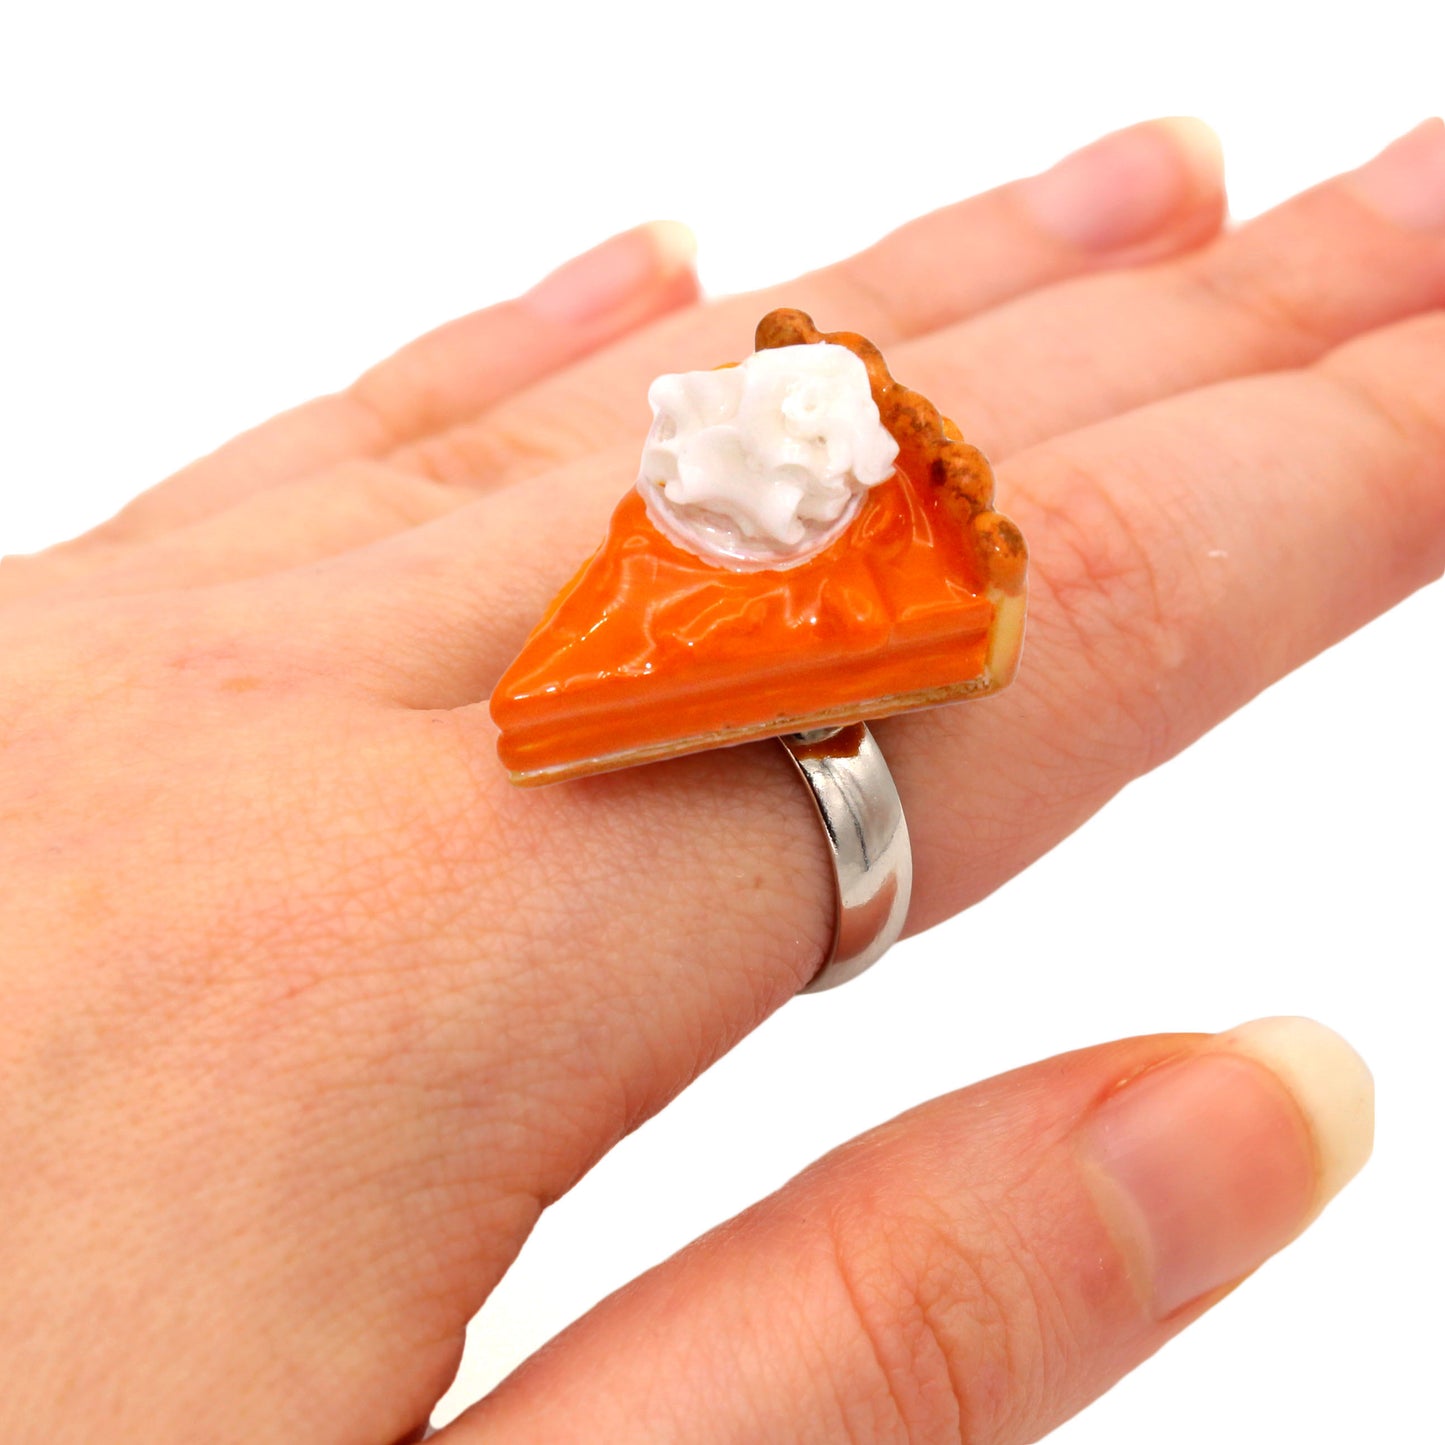 Autumn Statement Ring Pumpkin Pie Adjustable Size Fatally Feminine Designs